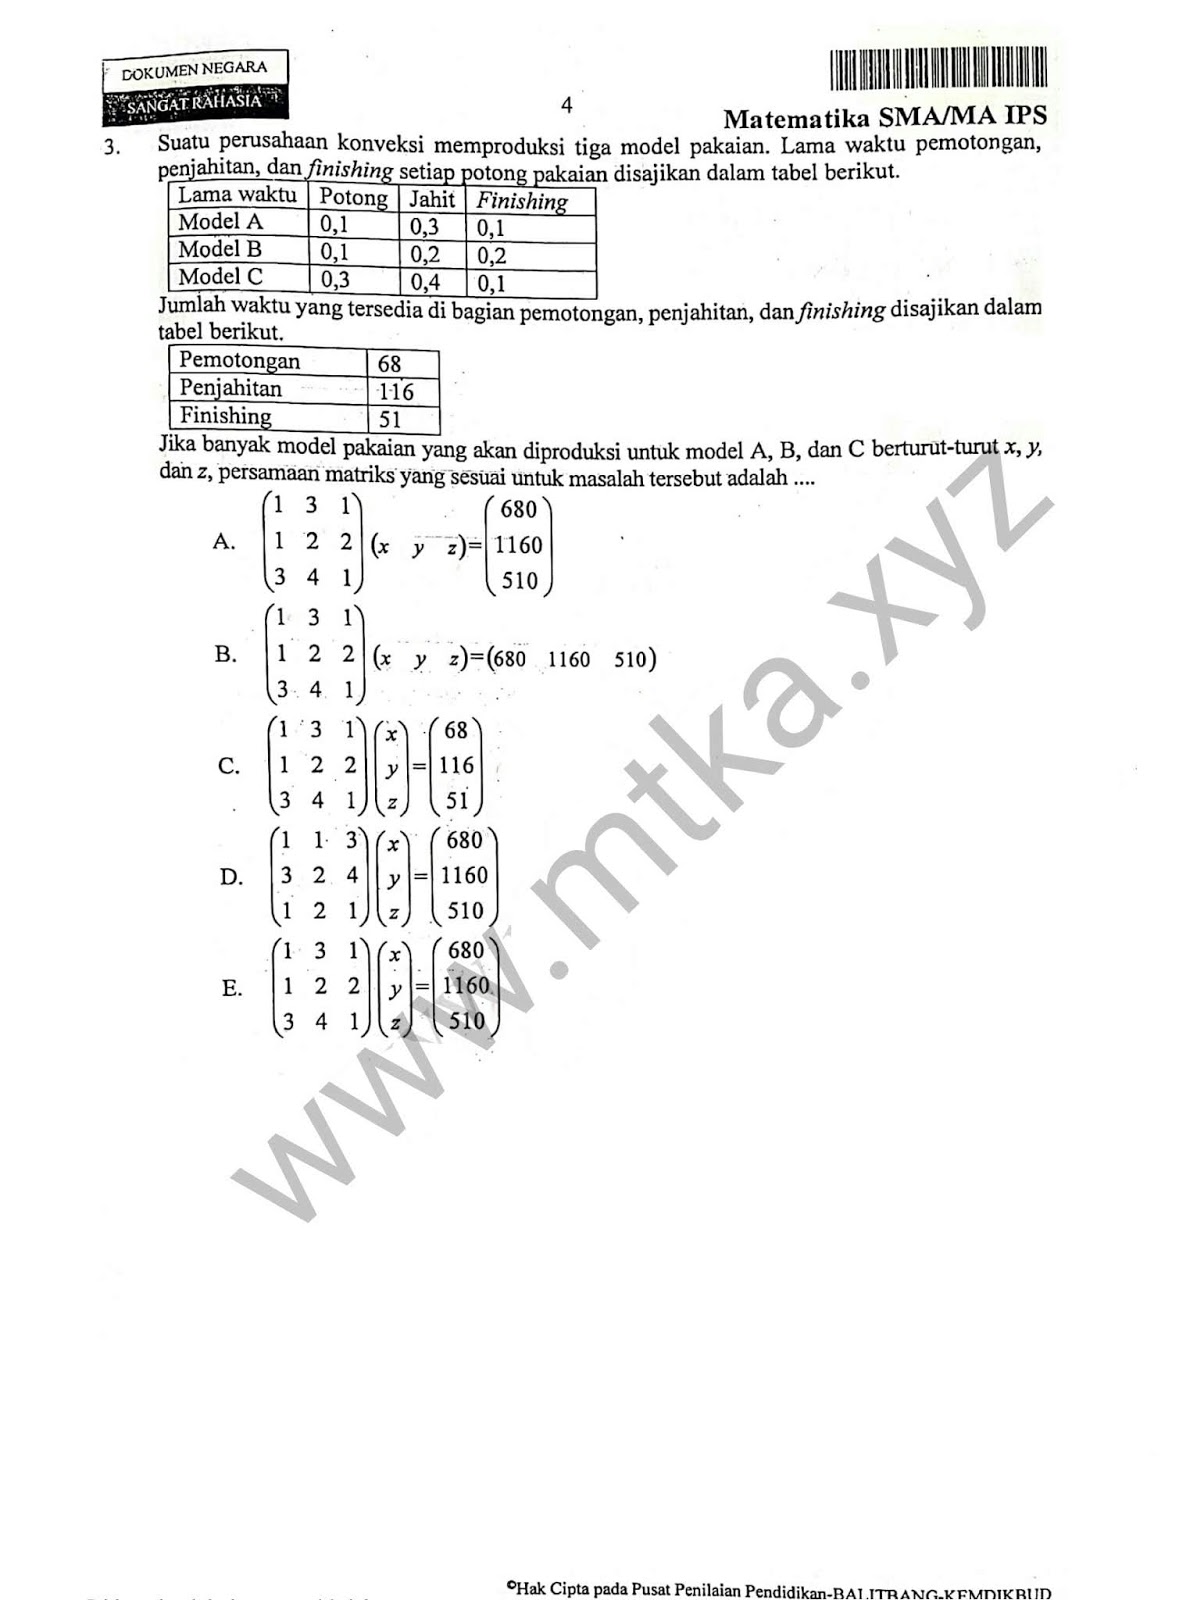 Pilihan Ganda Contoh Soal Induksi Matematika Kelas 11